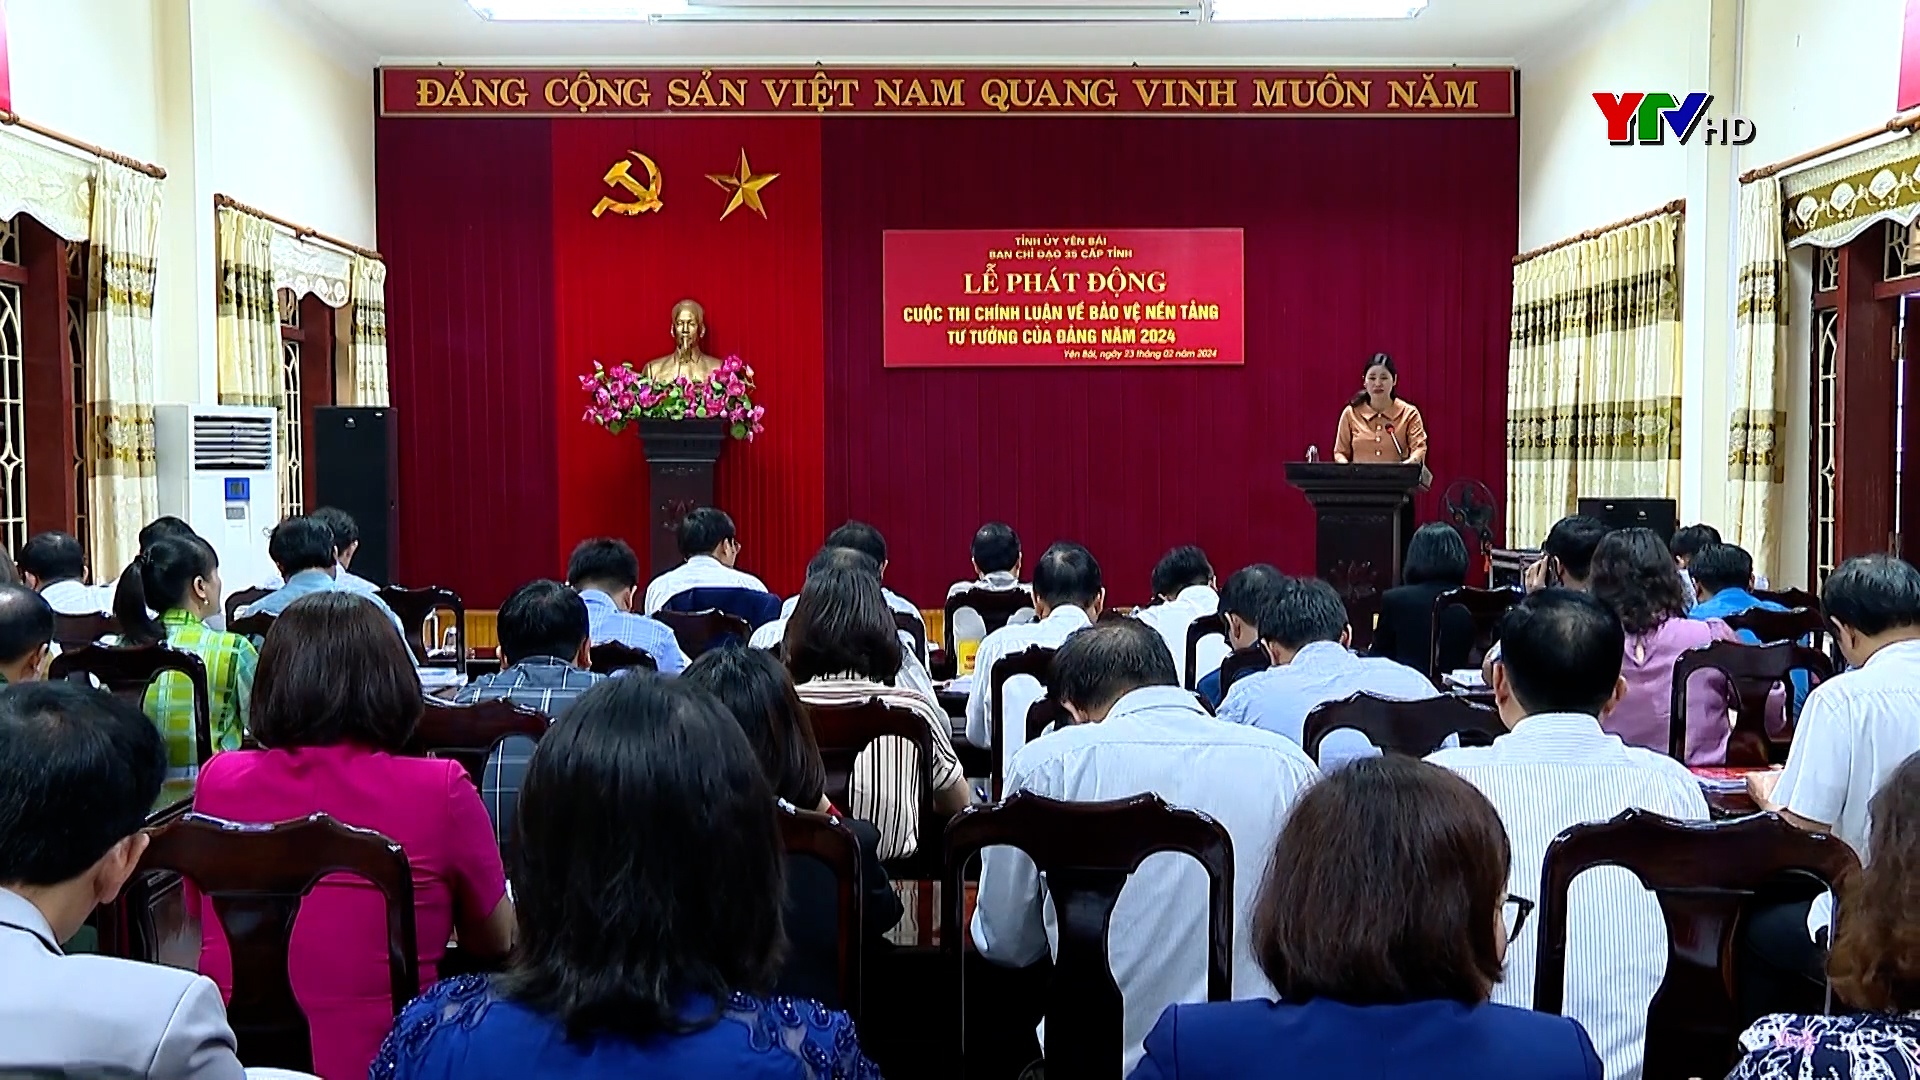 Phát động cuộc thi chính luận về bảo vệ nền tảng tư tưởng của Đảng tỉnh Yên Bái năm 2024